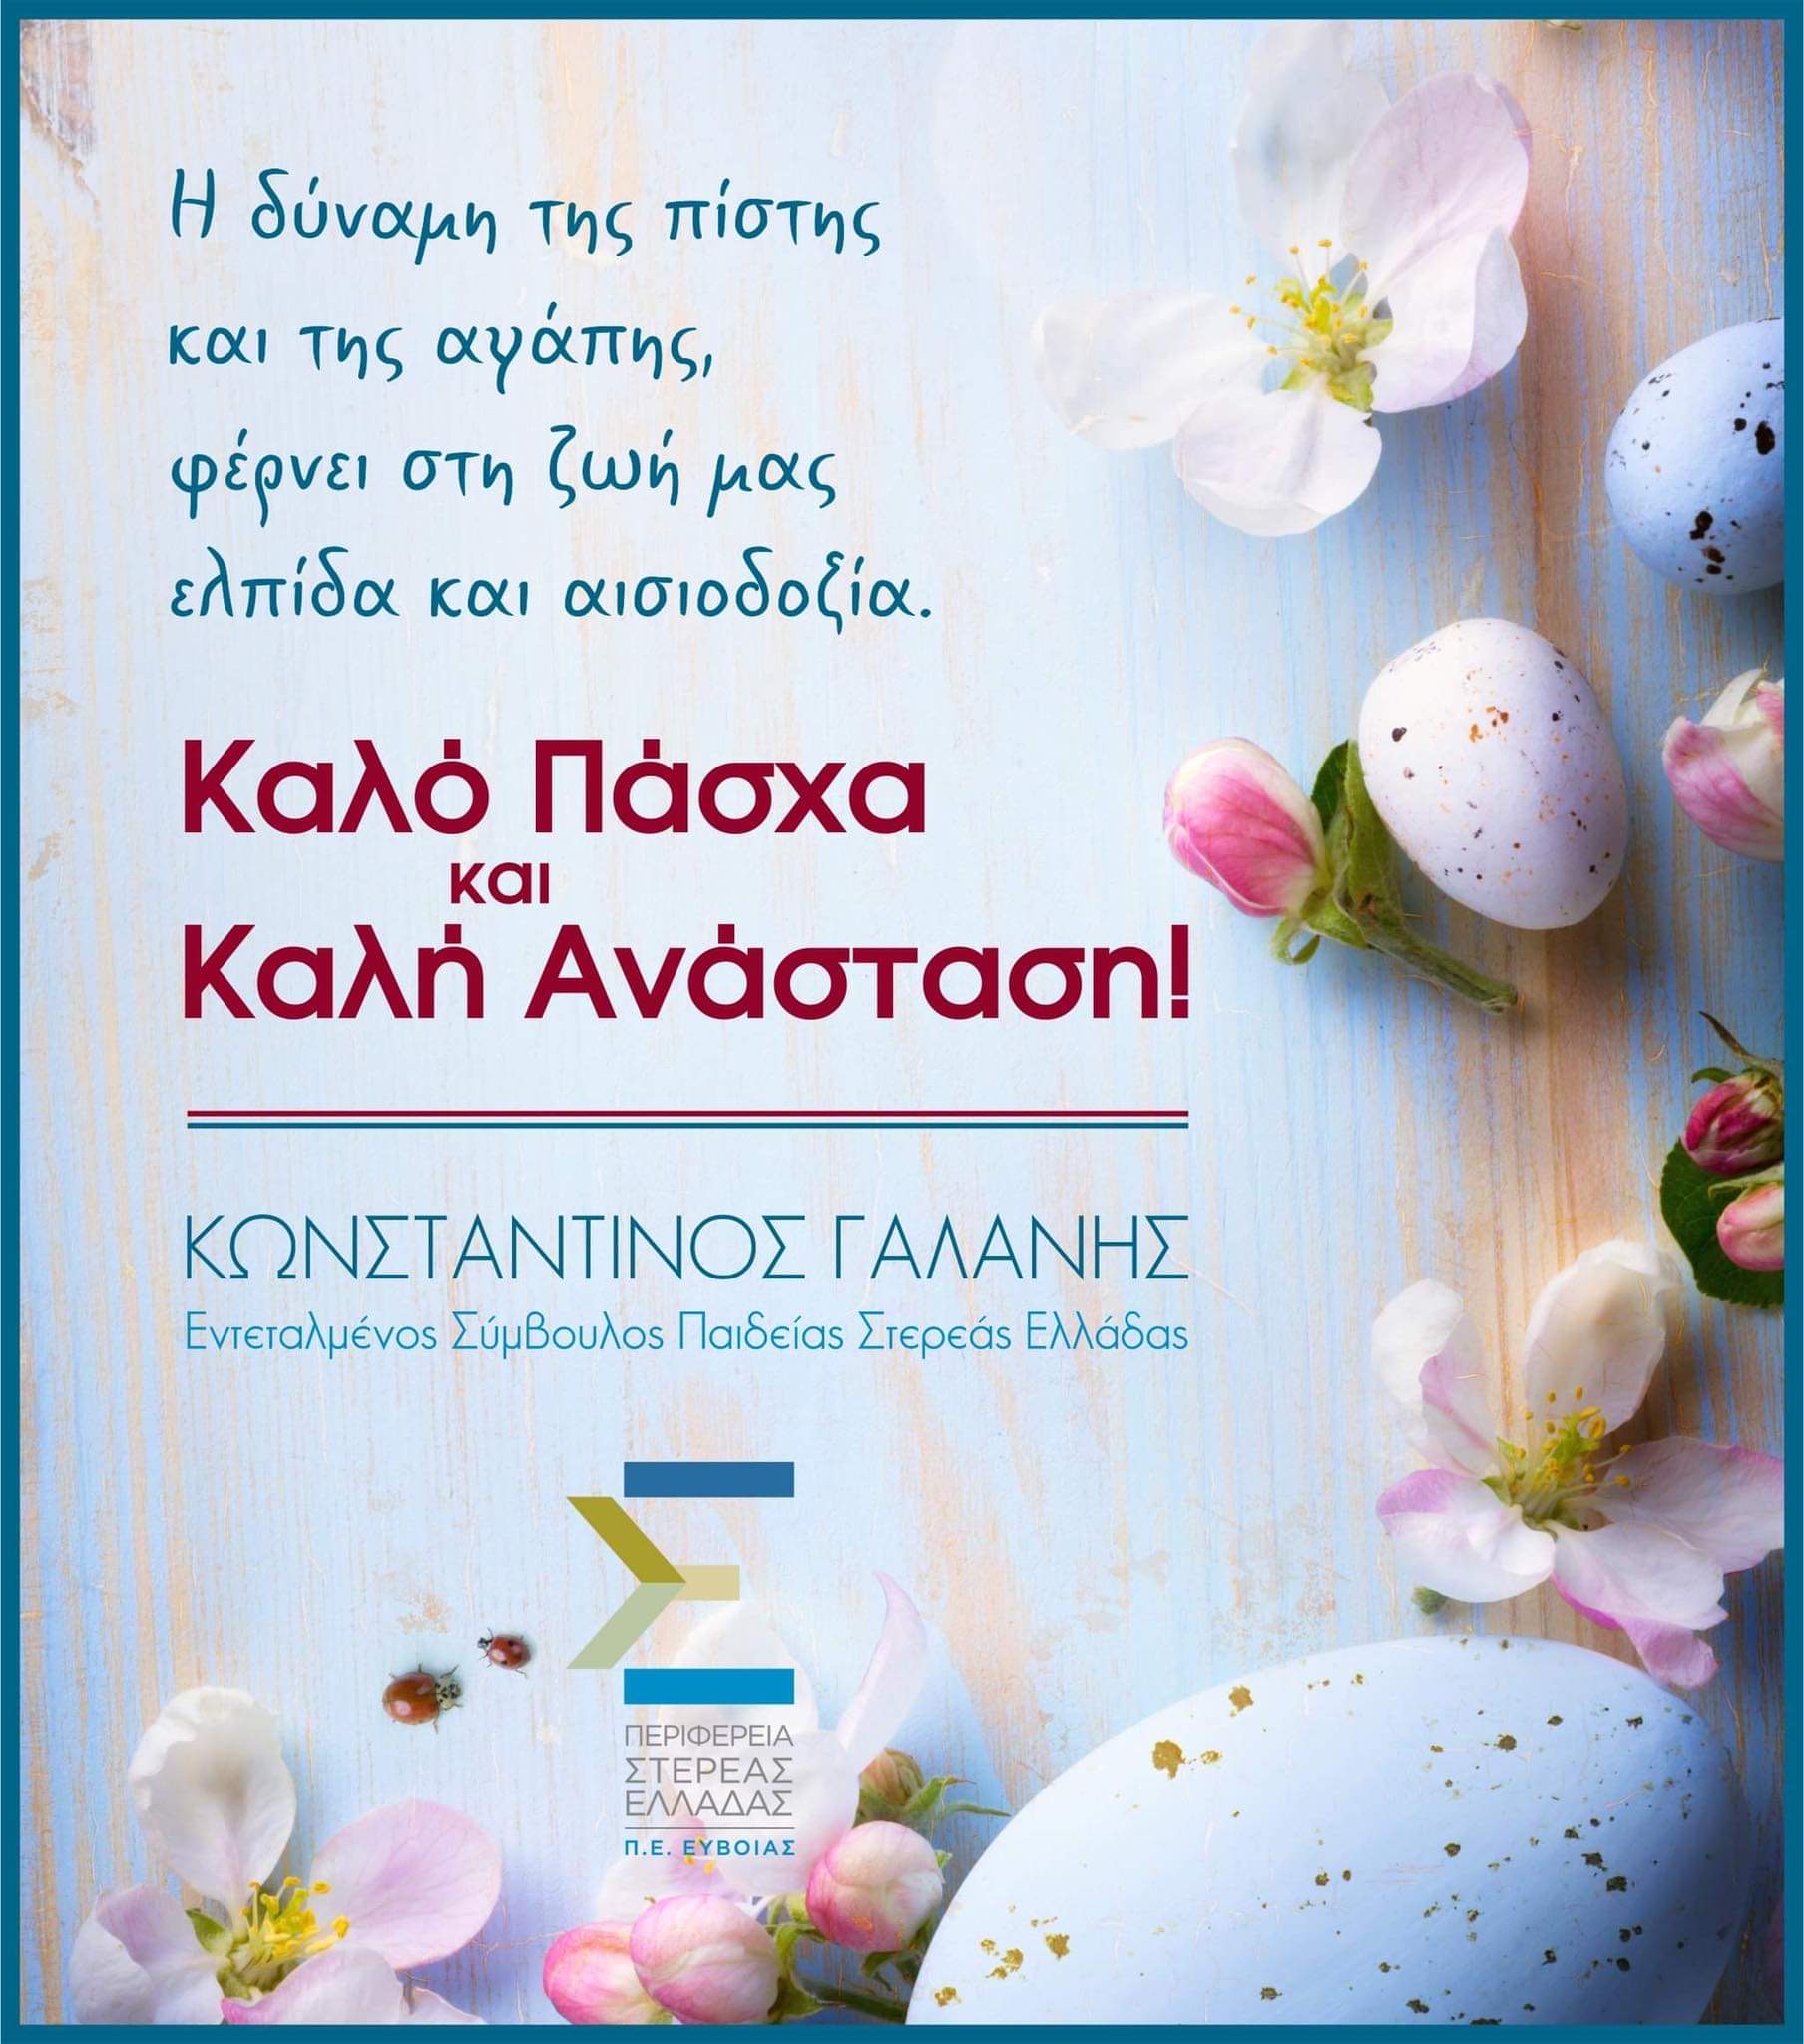 Ευχές για το Πάσχα από τον Εντεταλμένο Σύμβουλο Παιδείας Στερεάς Ελλάδας